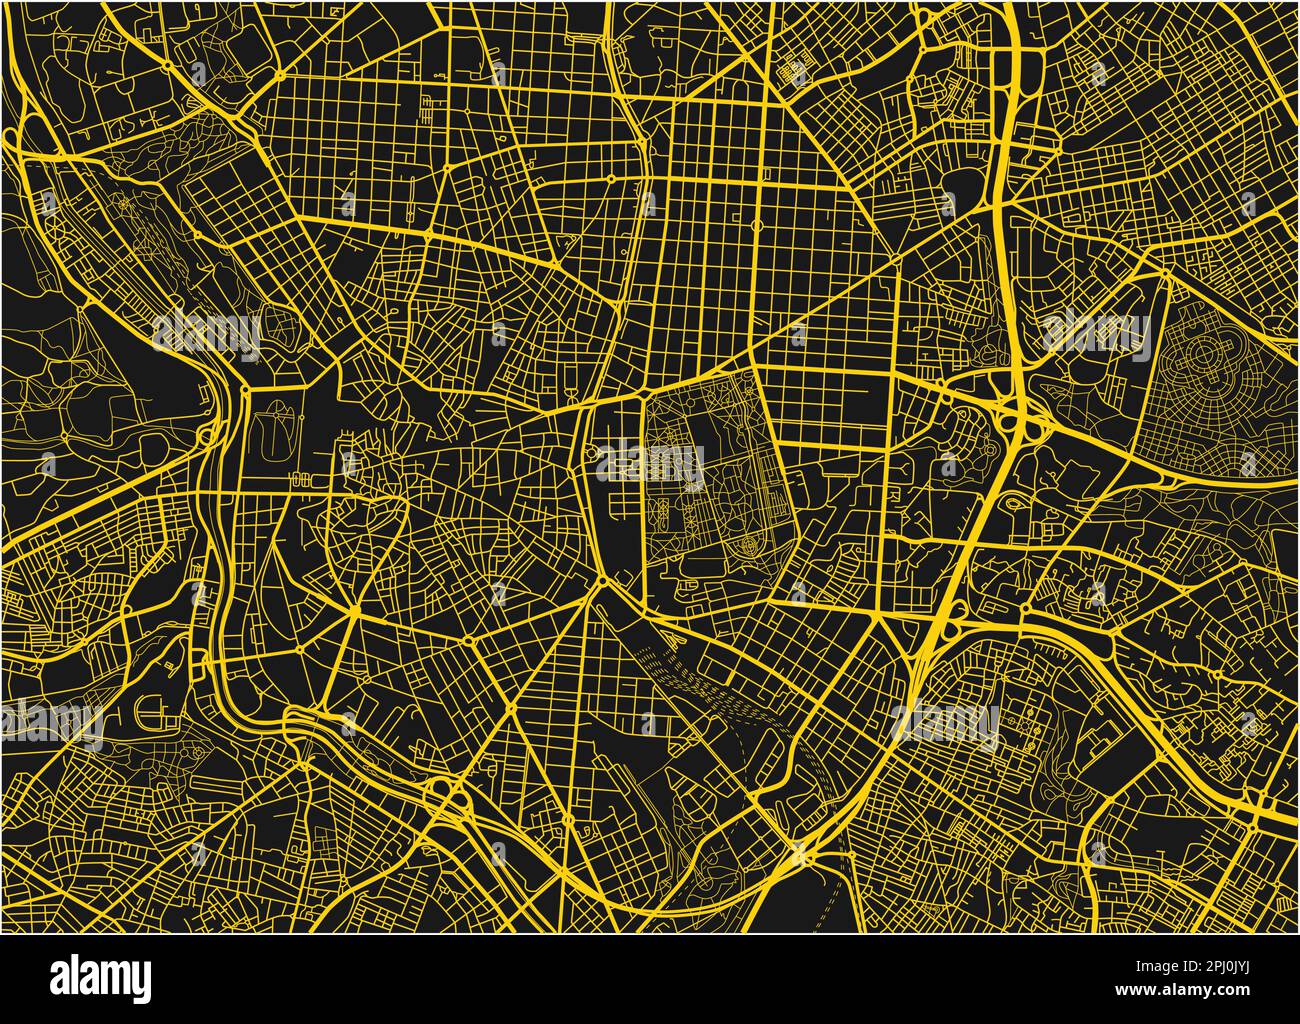 Schwarz-gelber Stadtplan von Madrid mit gut organisierten getrennten Schichten. Stock Vektor